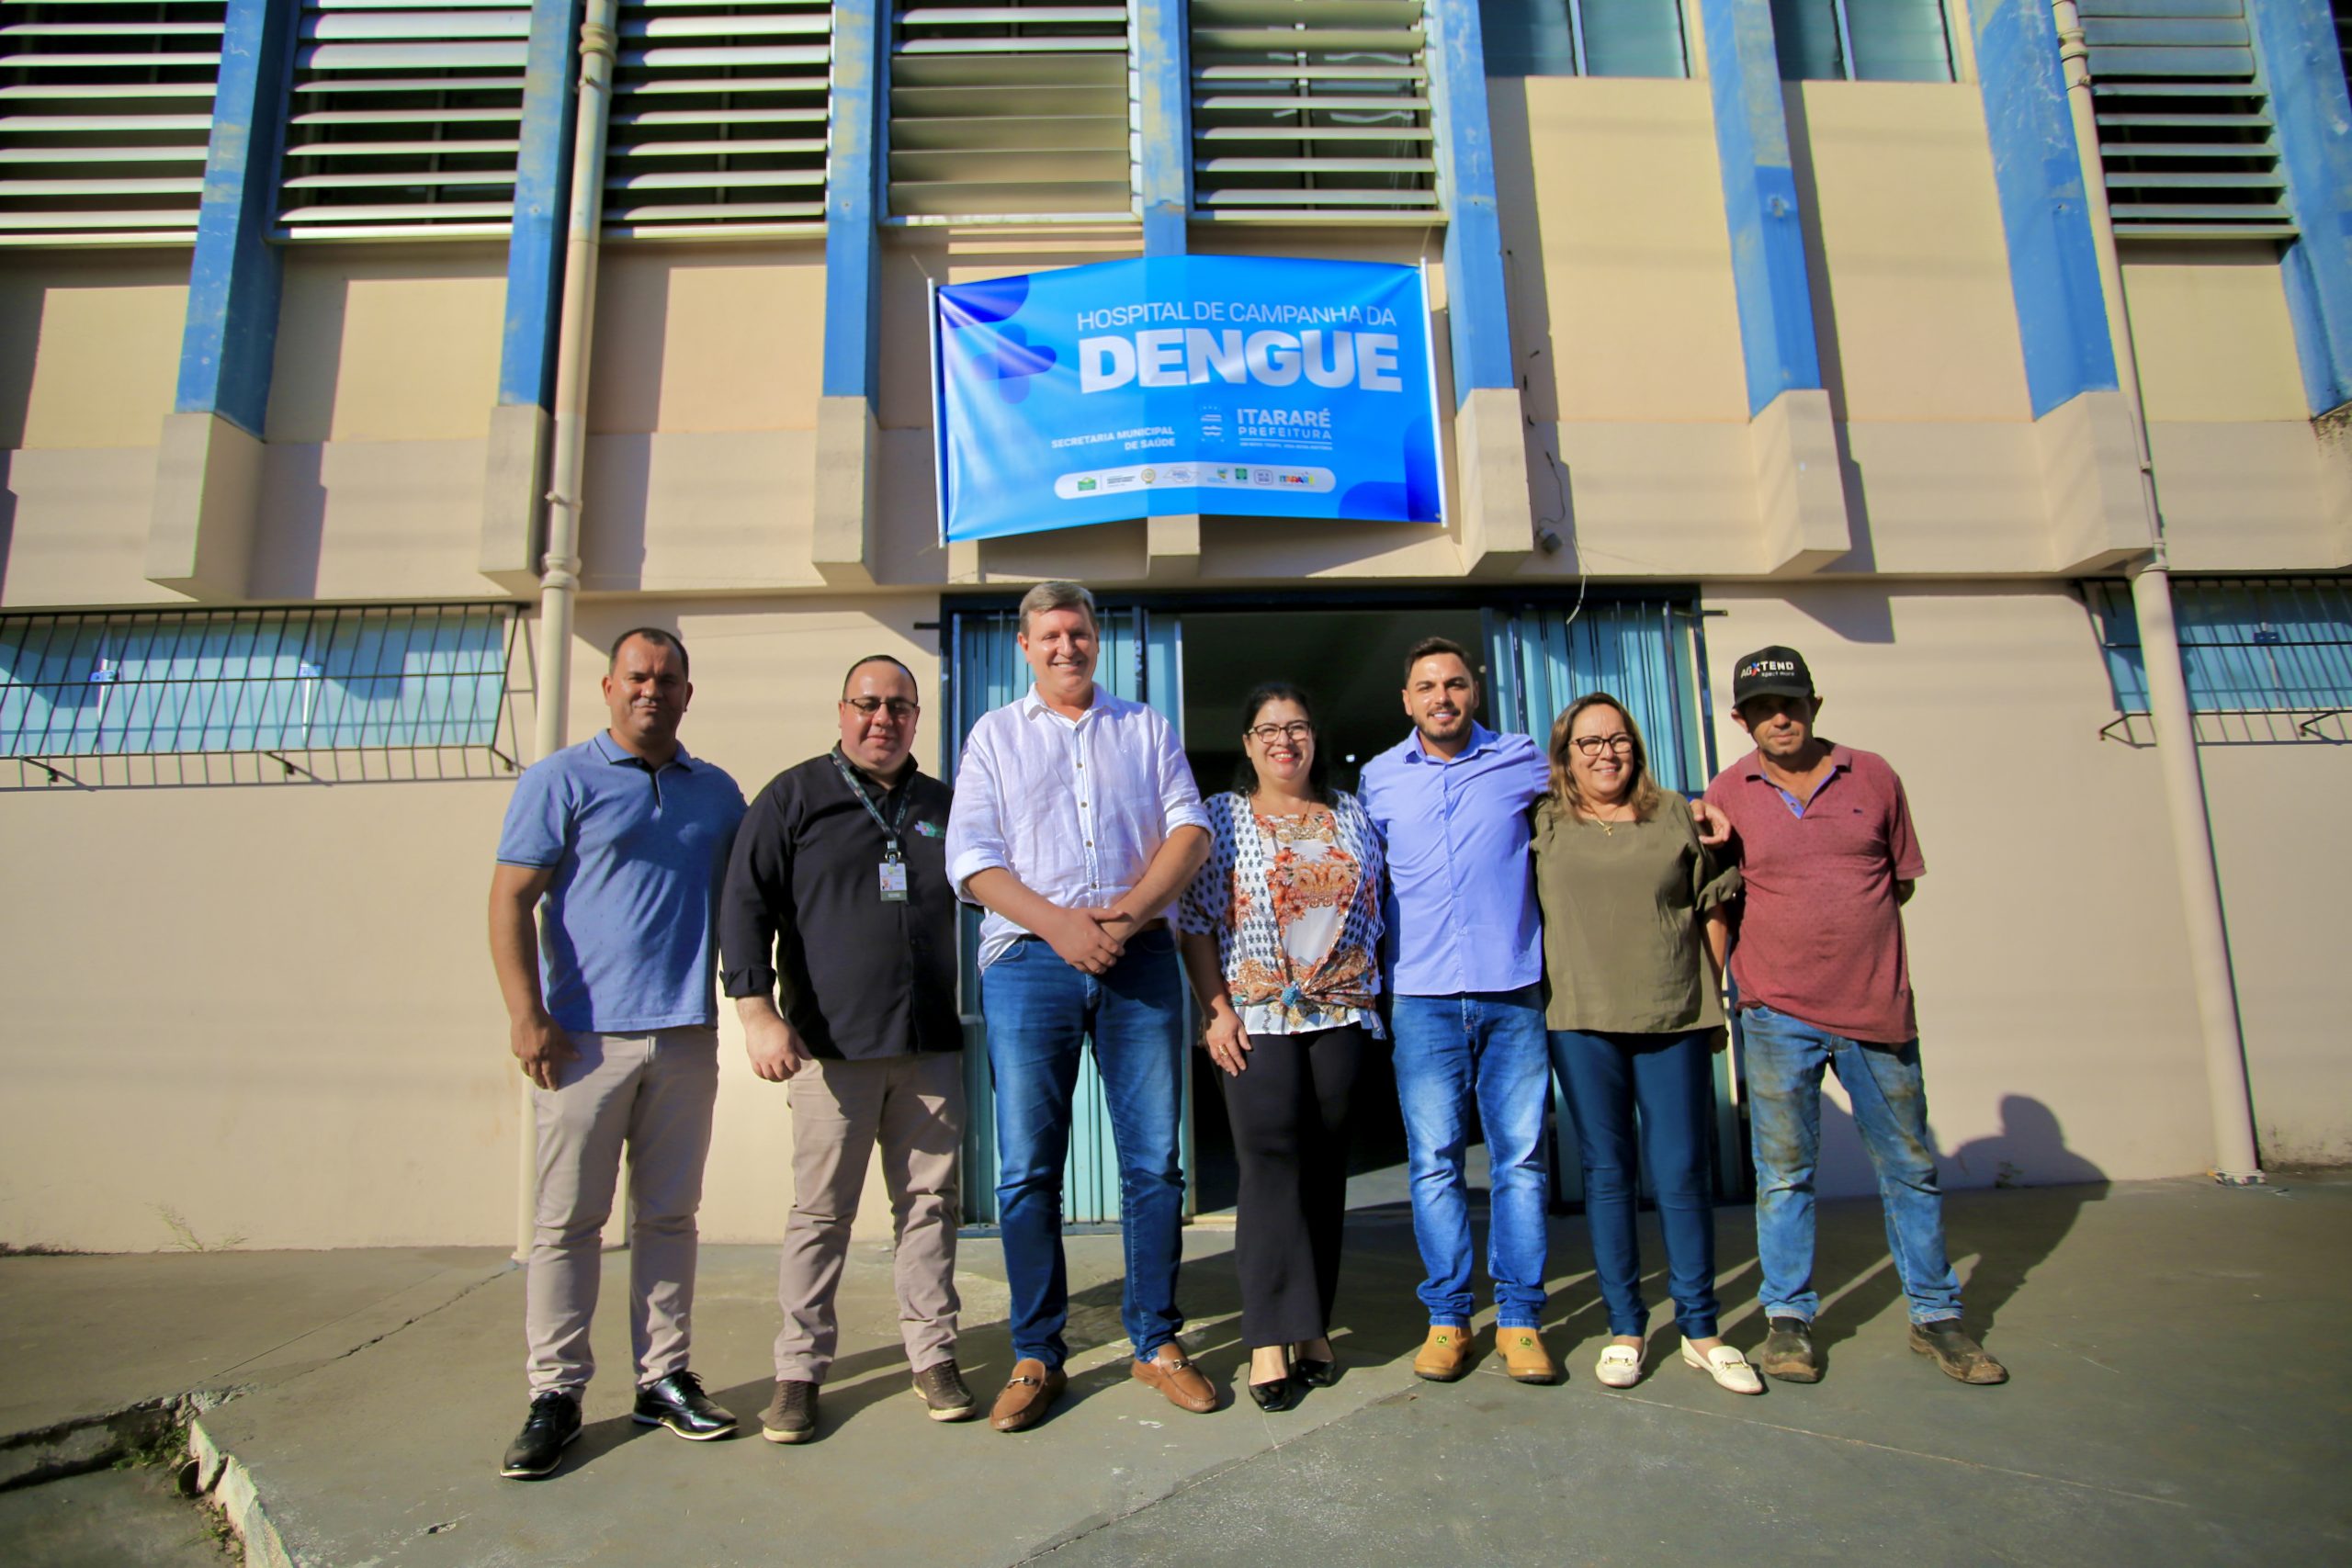 De forma inédita na região, Prefeitura de Itararé (SP) inaugura Hospital de Campanha da Dengue